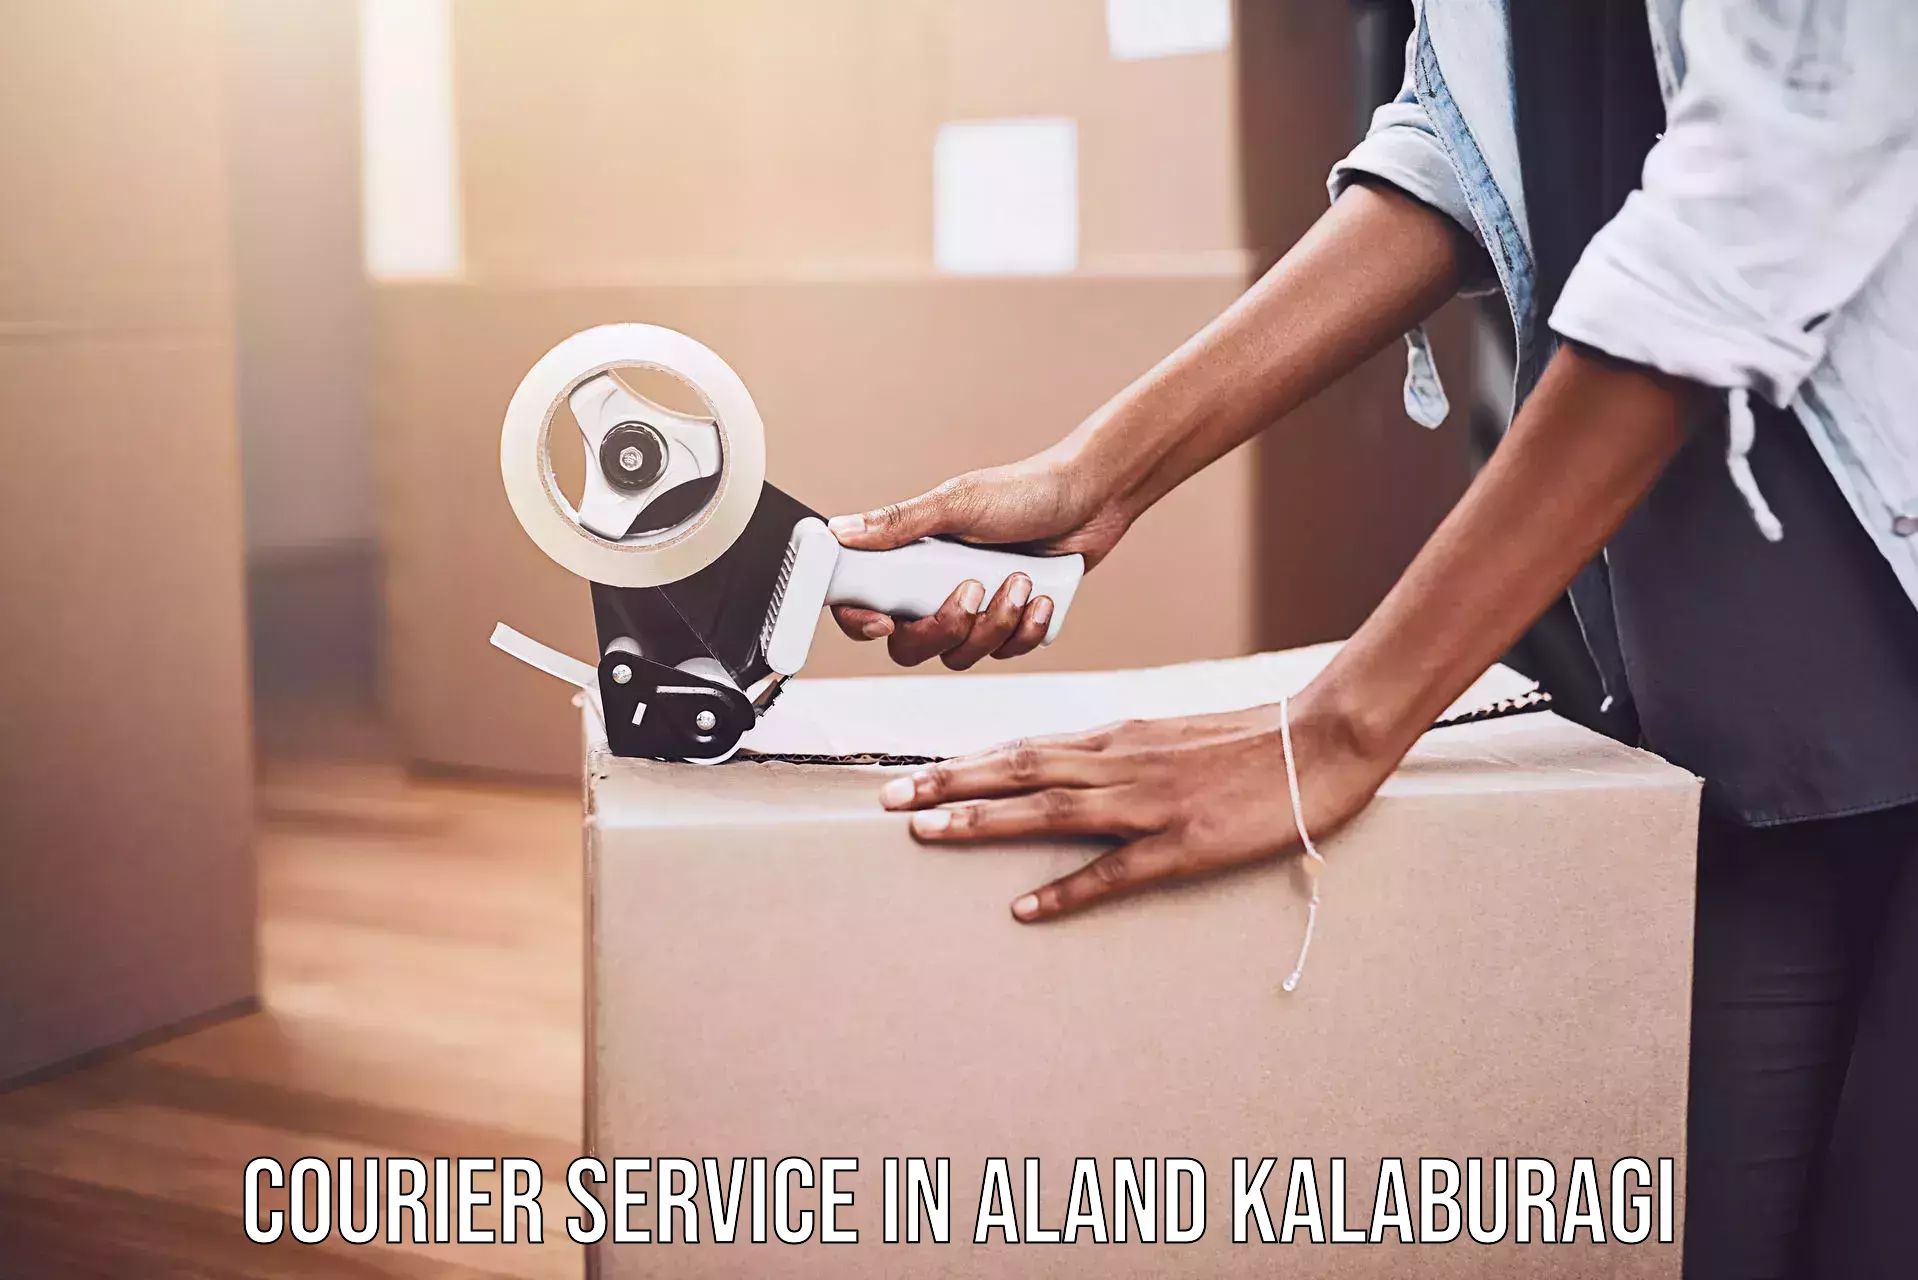 Flexible courier rates in Aland Kalaburagi